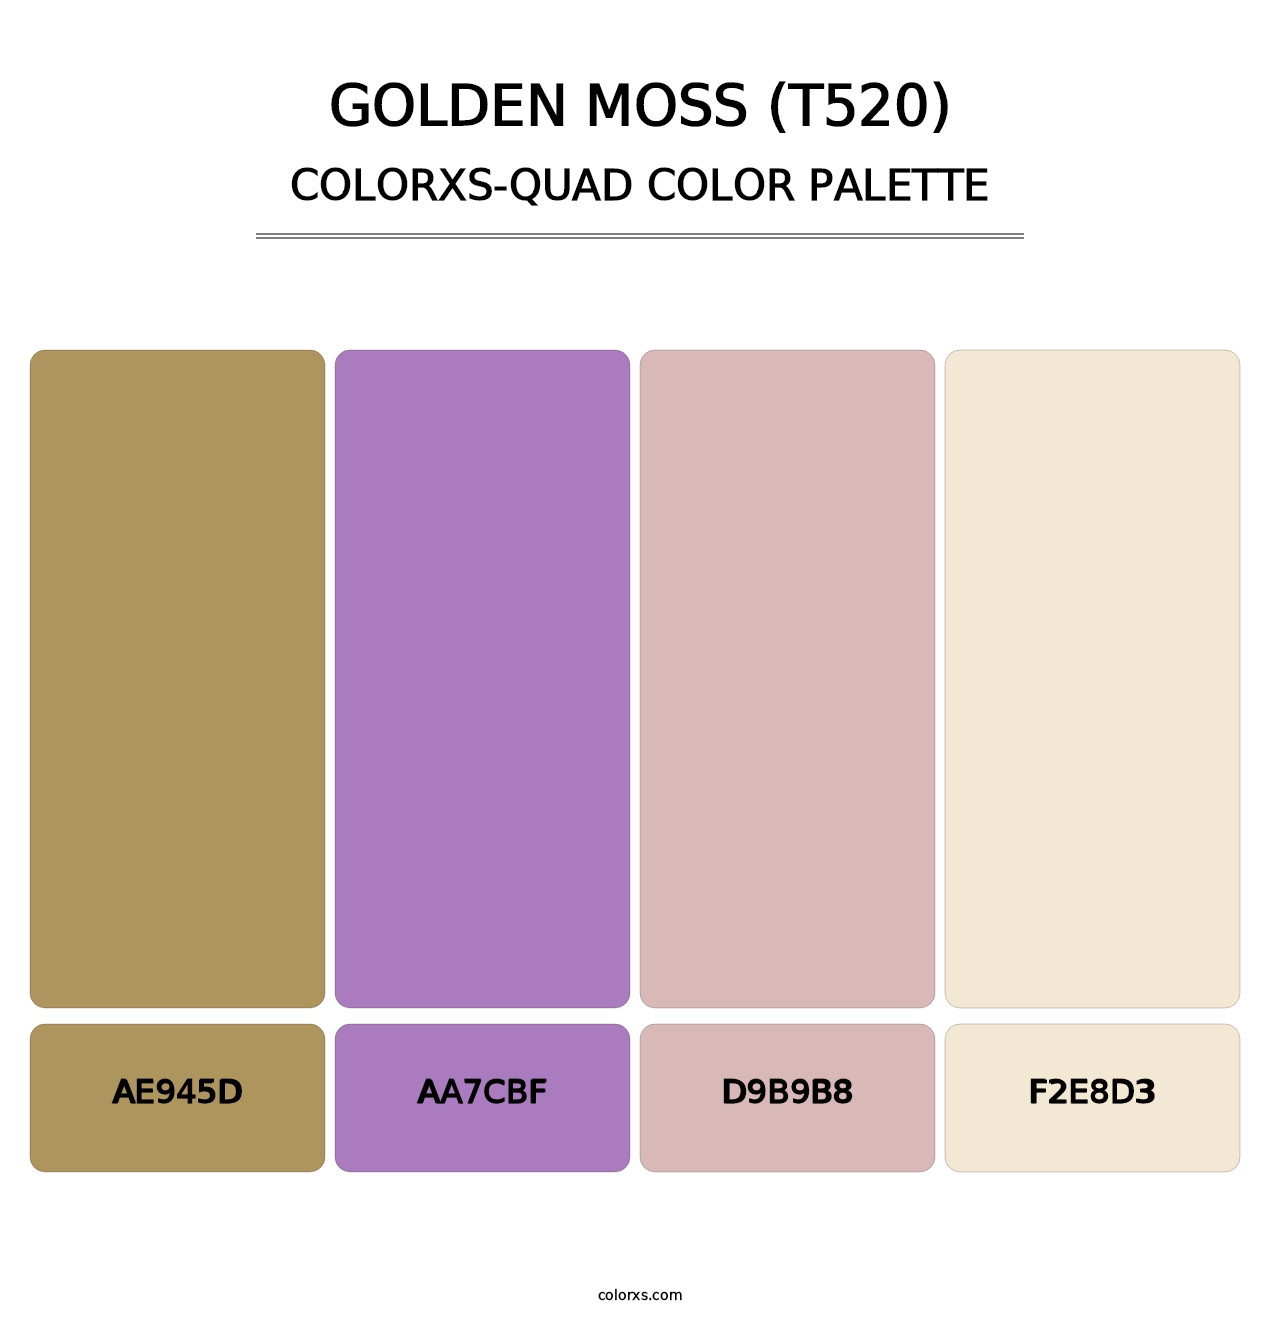 Golden Moss (T520) - Colorxs Quad Palette